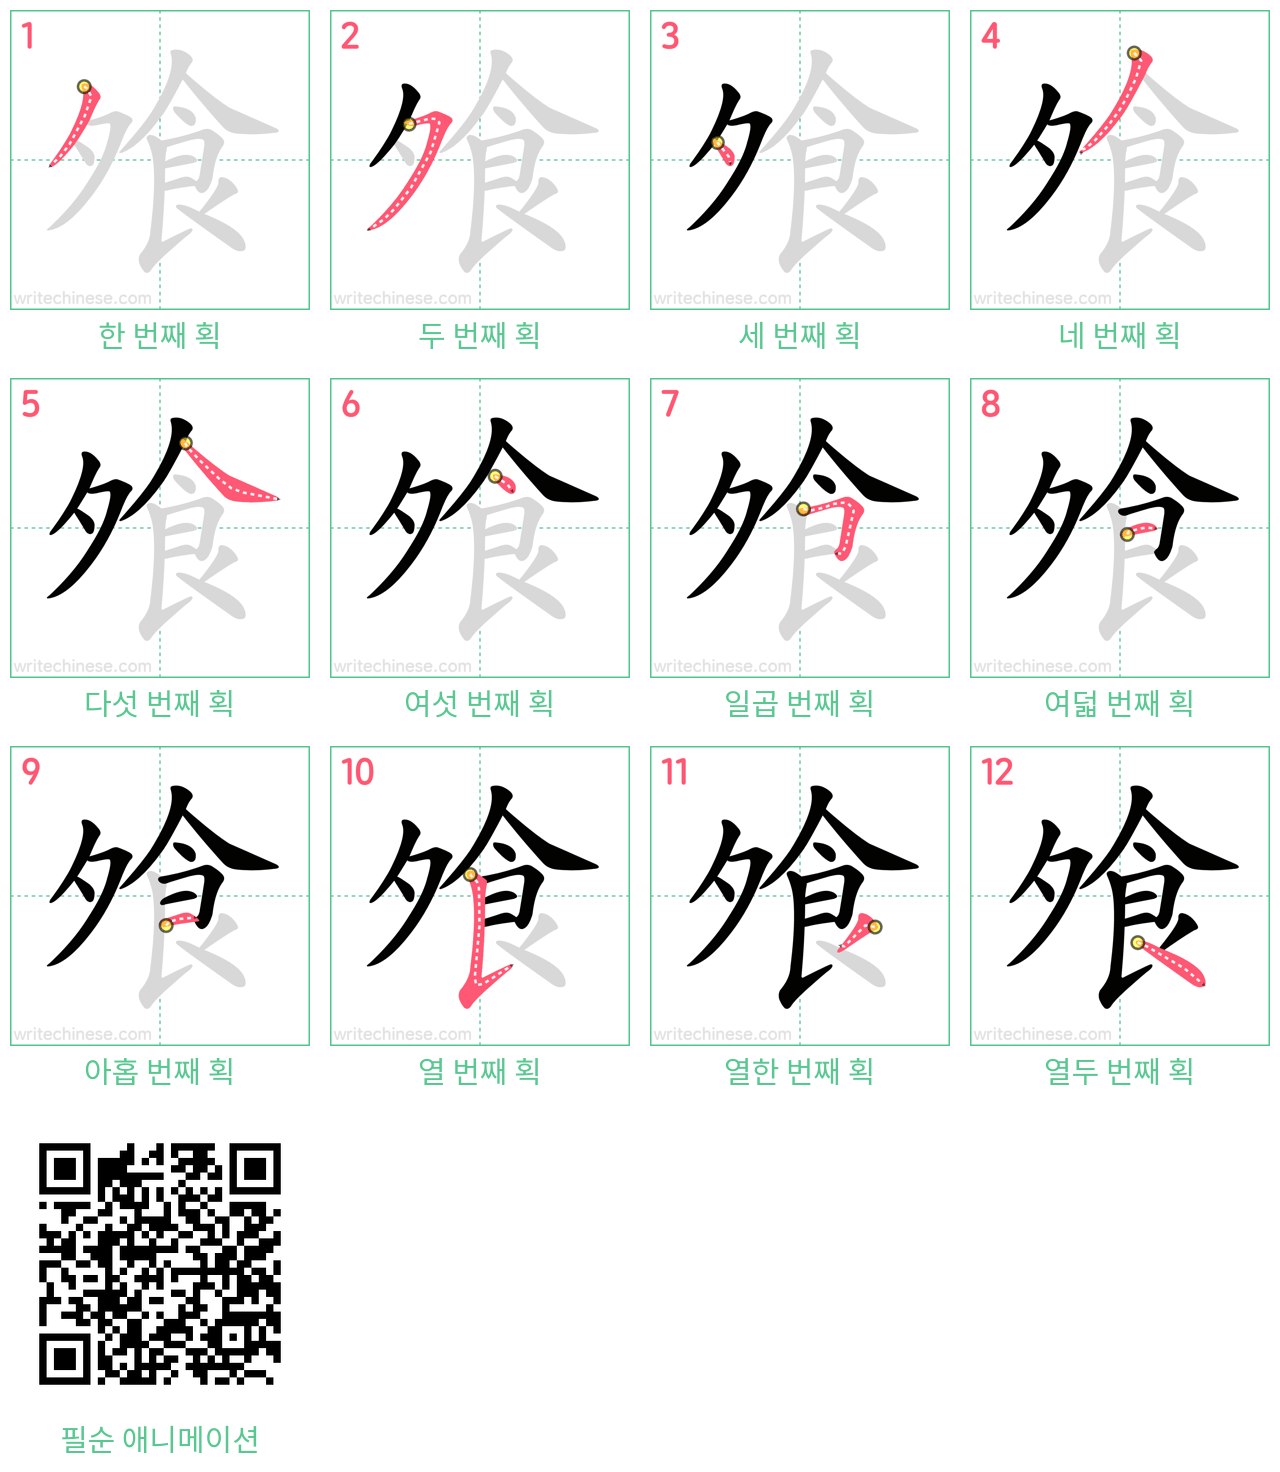 飧 step-by-step stroke order diagrams